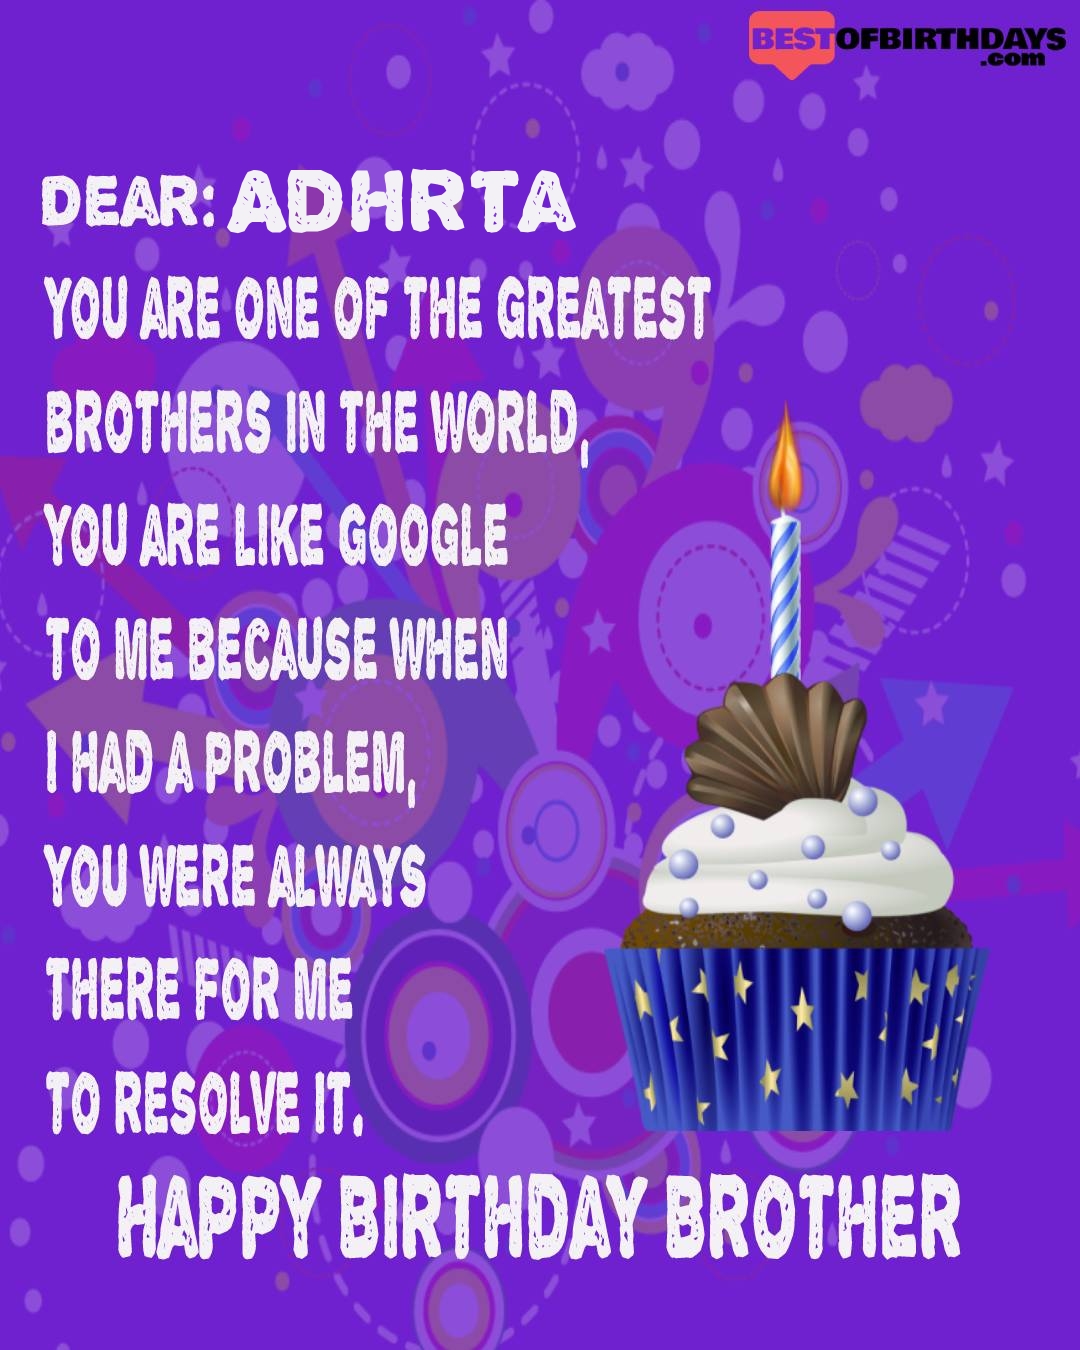 Happy birthday adhrta bhai brother bro